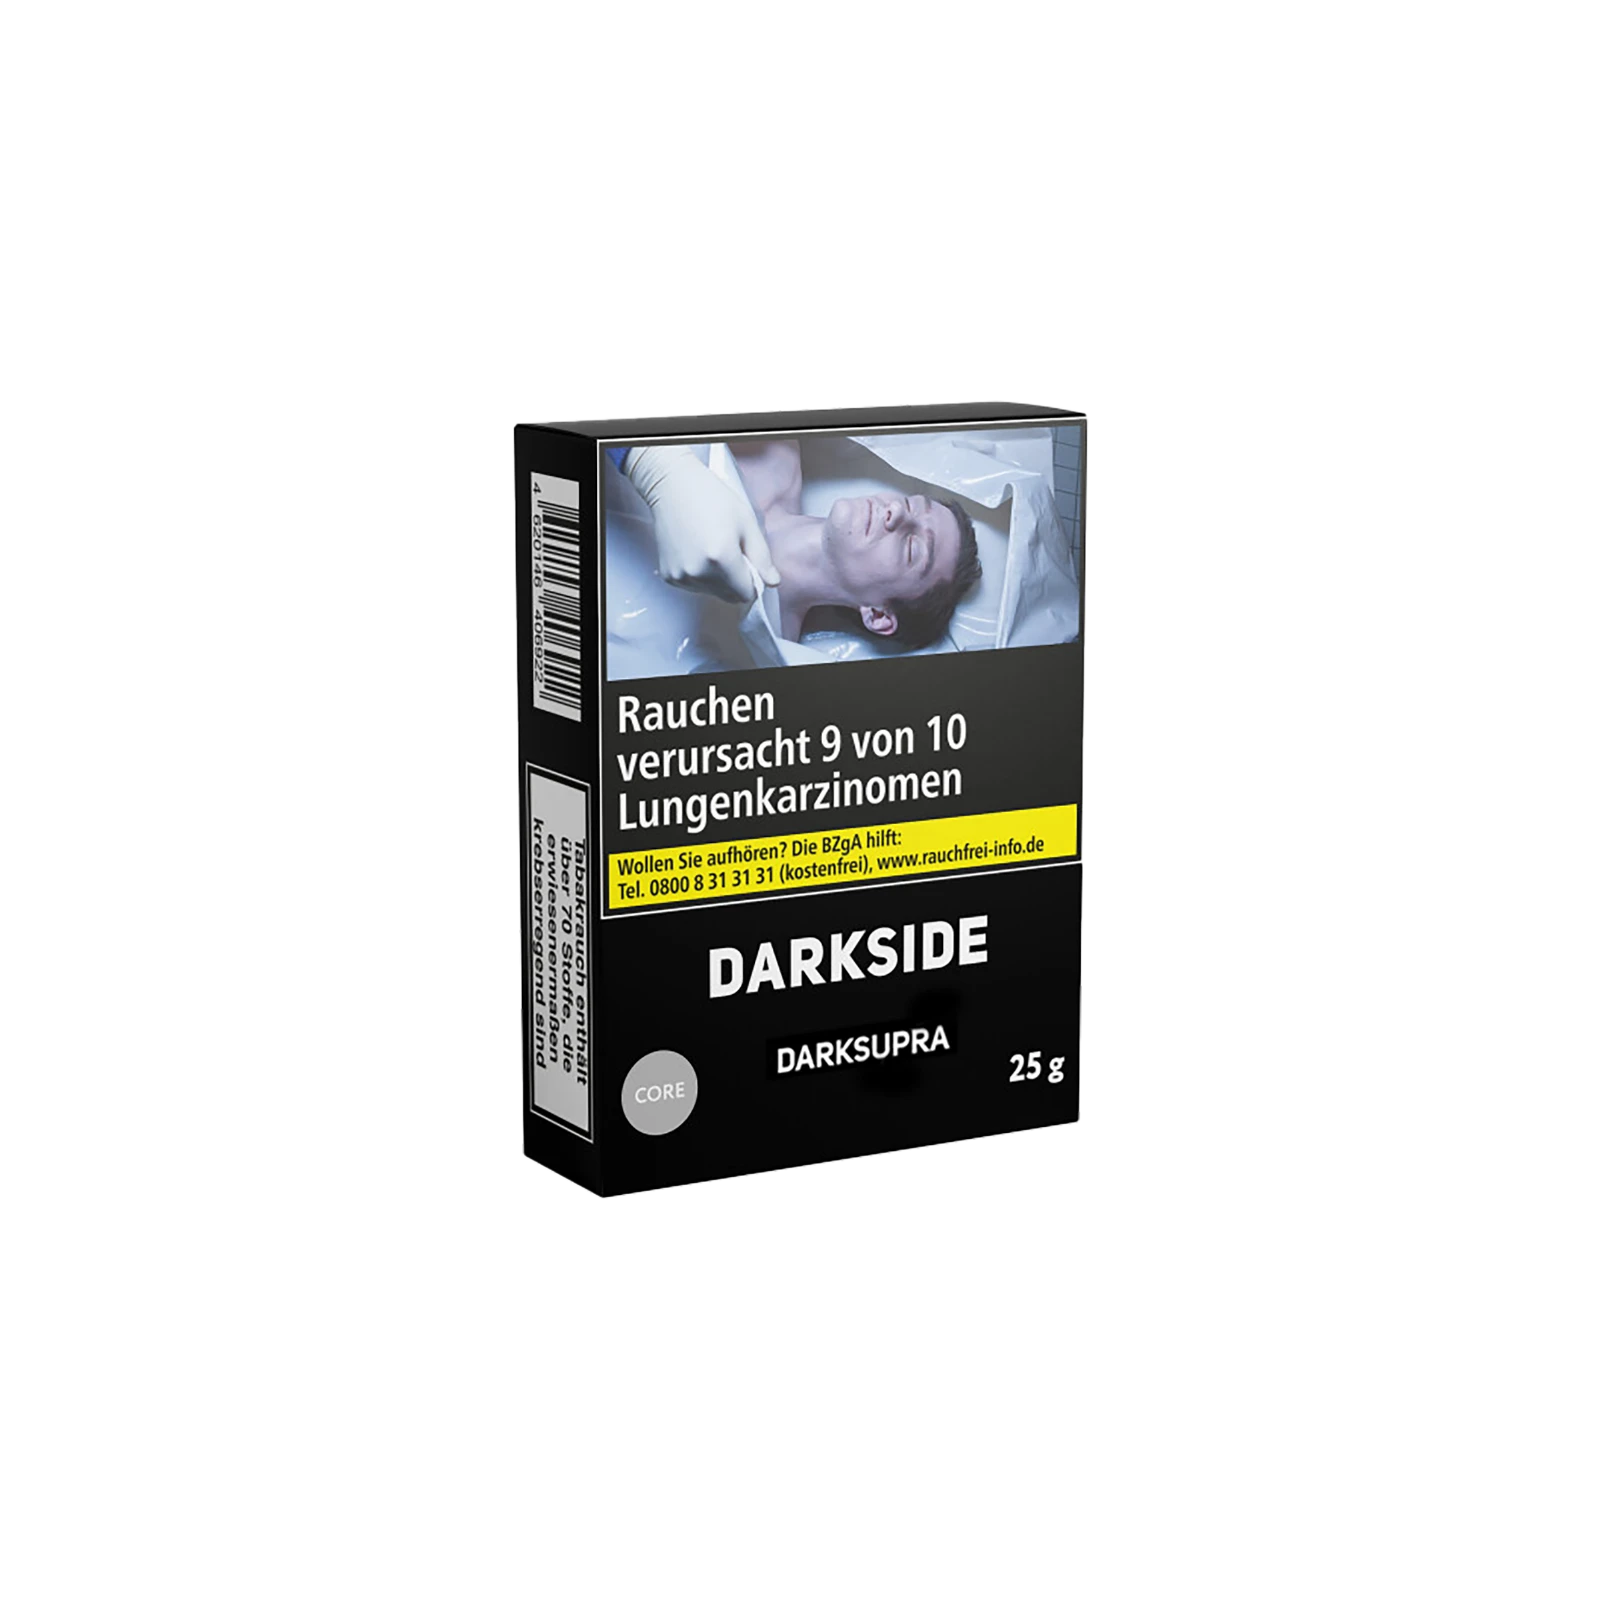 Darkside - Core - Darksupra - 25 g